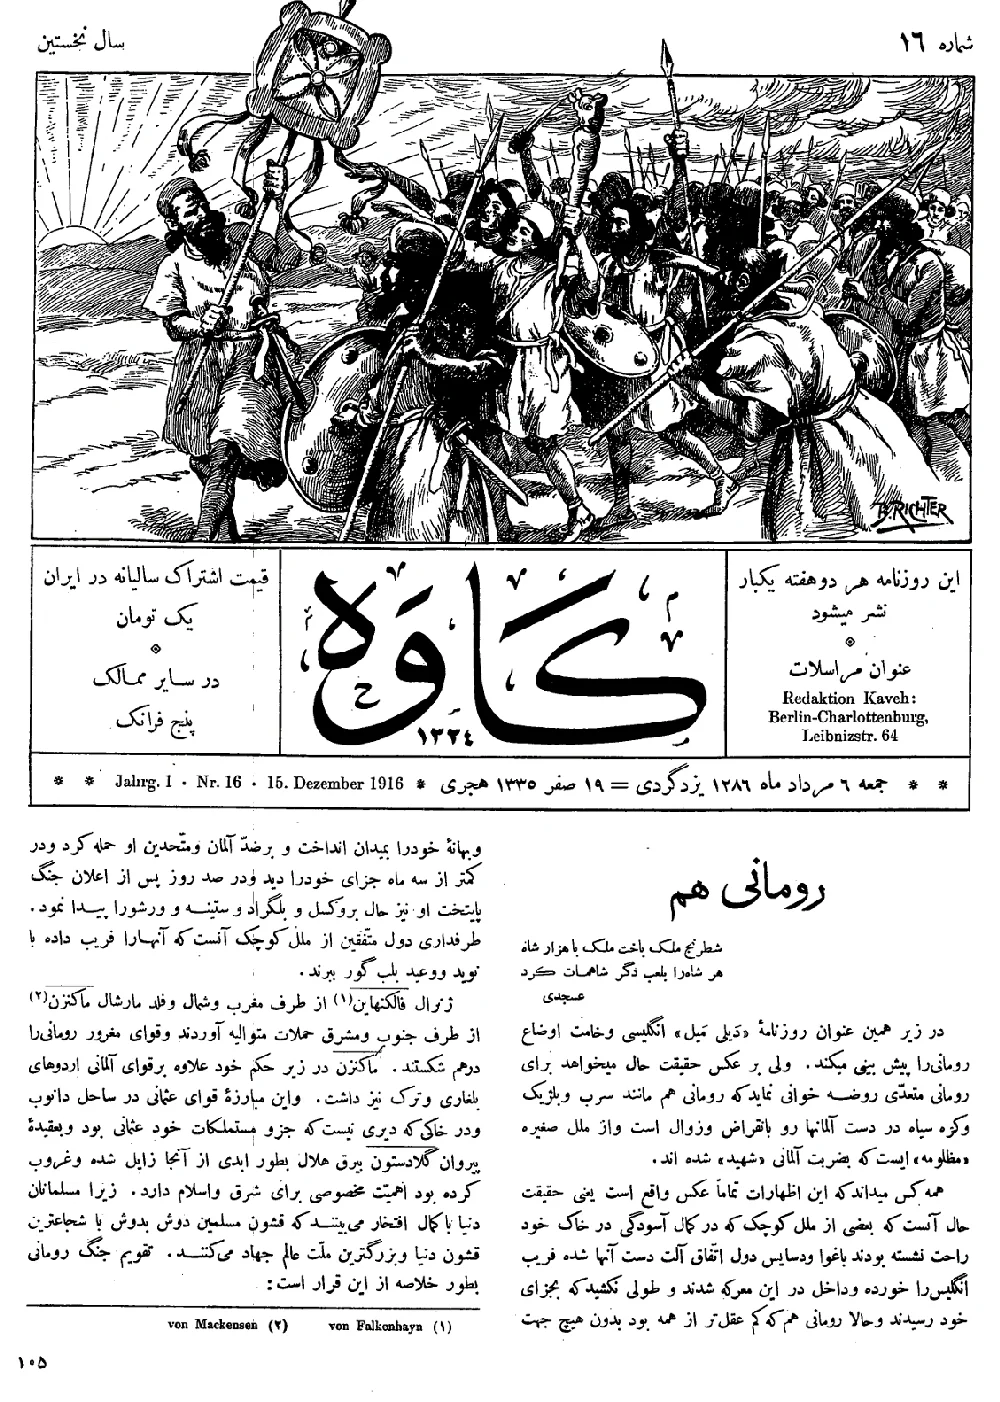 مجله کاوه - شماره ۱۶ - ۶ مرداد ۱۲۸۶